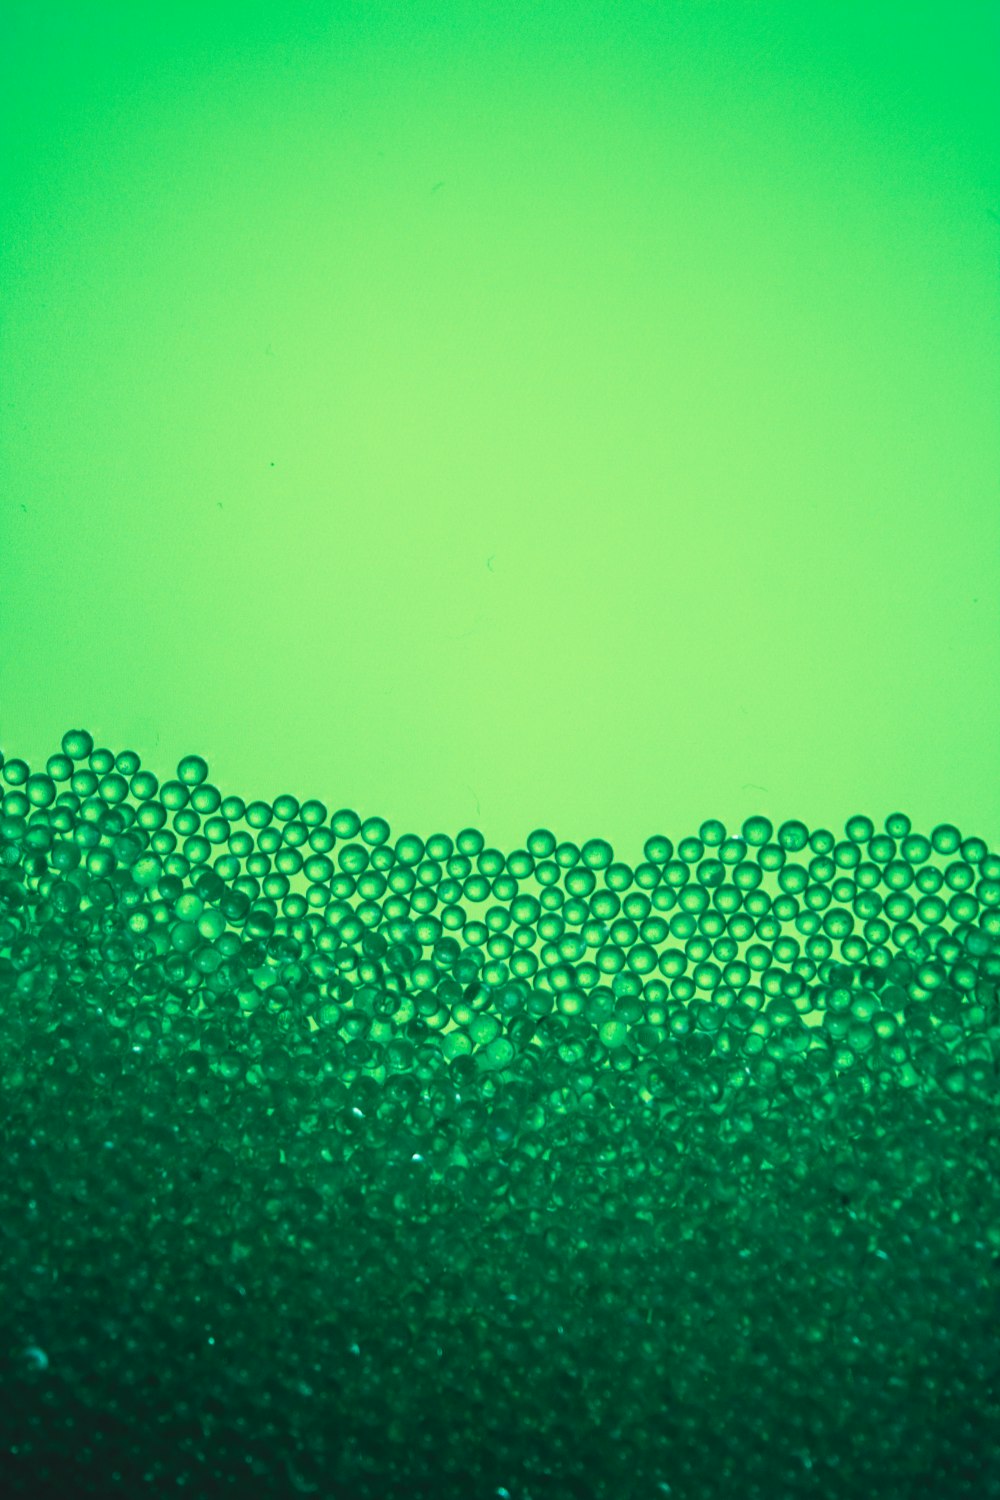 eine Nahaufnahme einer grünen Flüssigkeit, die mit Blasen gefüllt ist